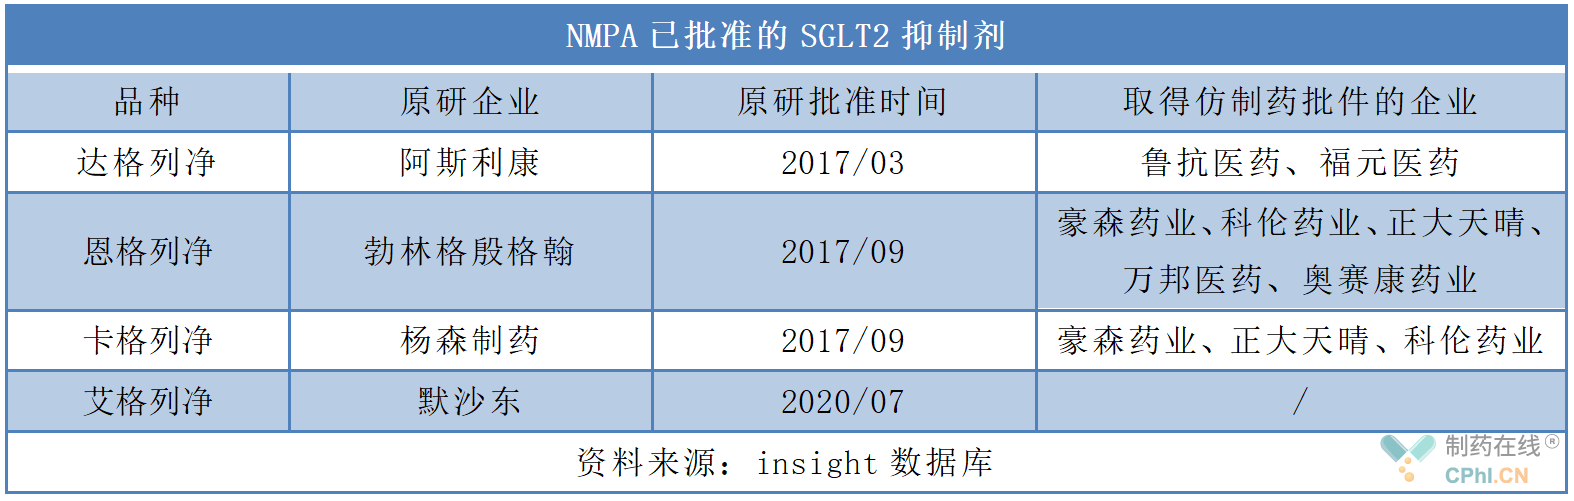 NMPA已批准的SGLT2抑制剂